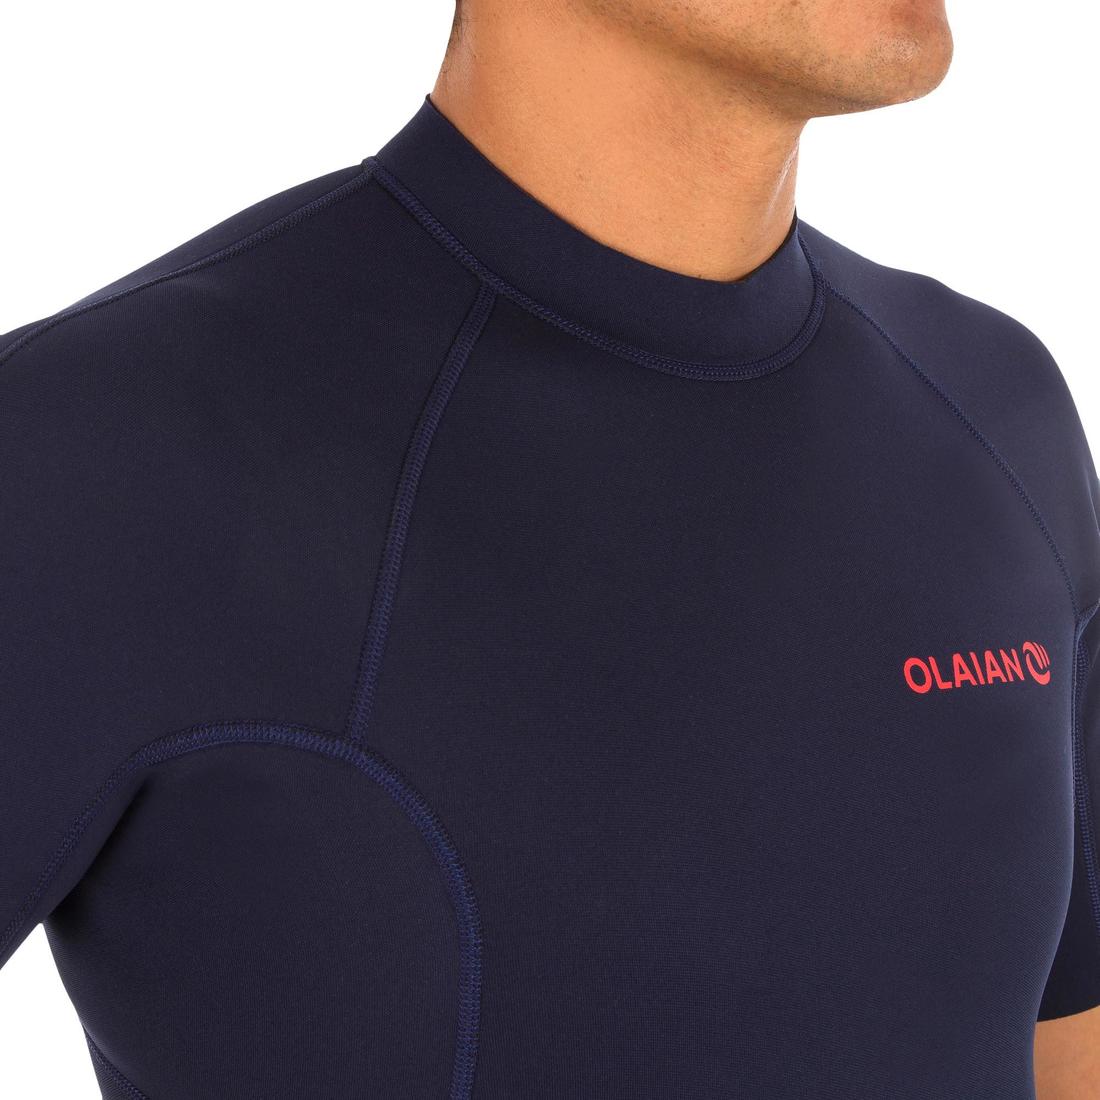 OLAIAN (オライアン) サーフィン ウェットスーツ/ショート丈 スプリング 1.5mm メンズ